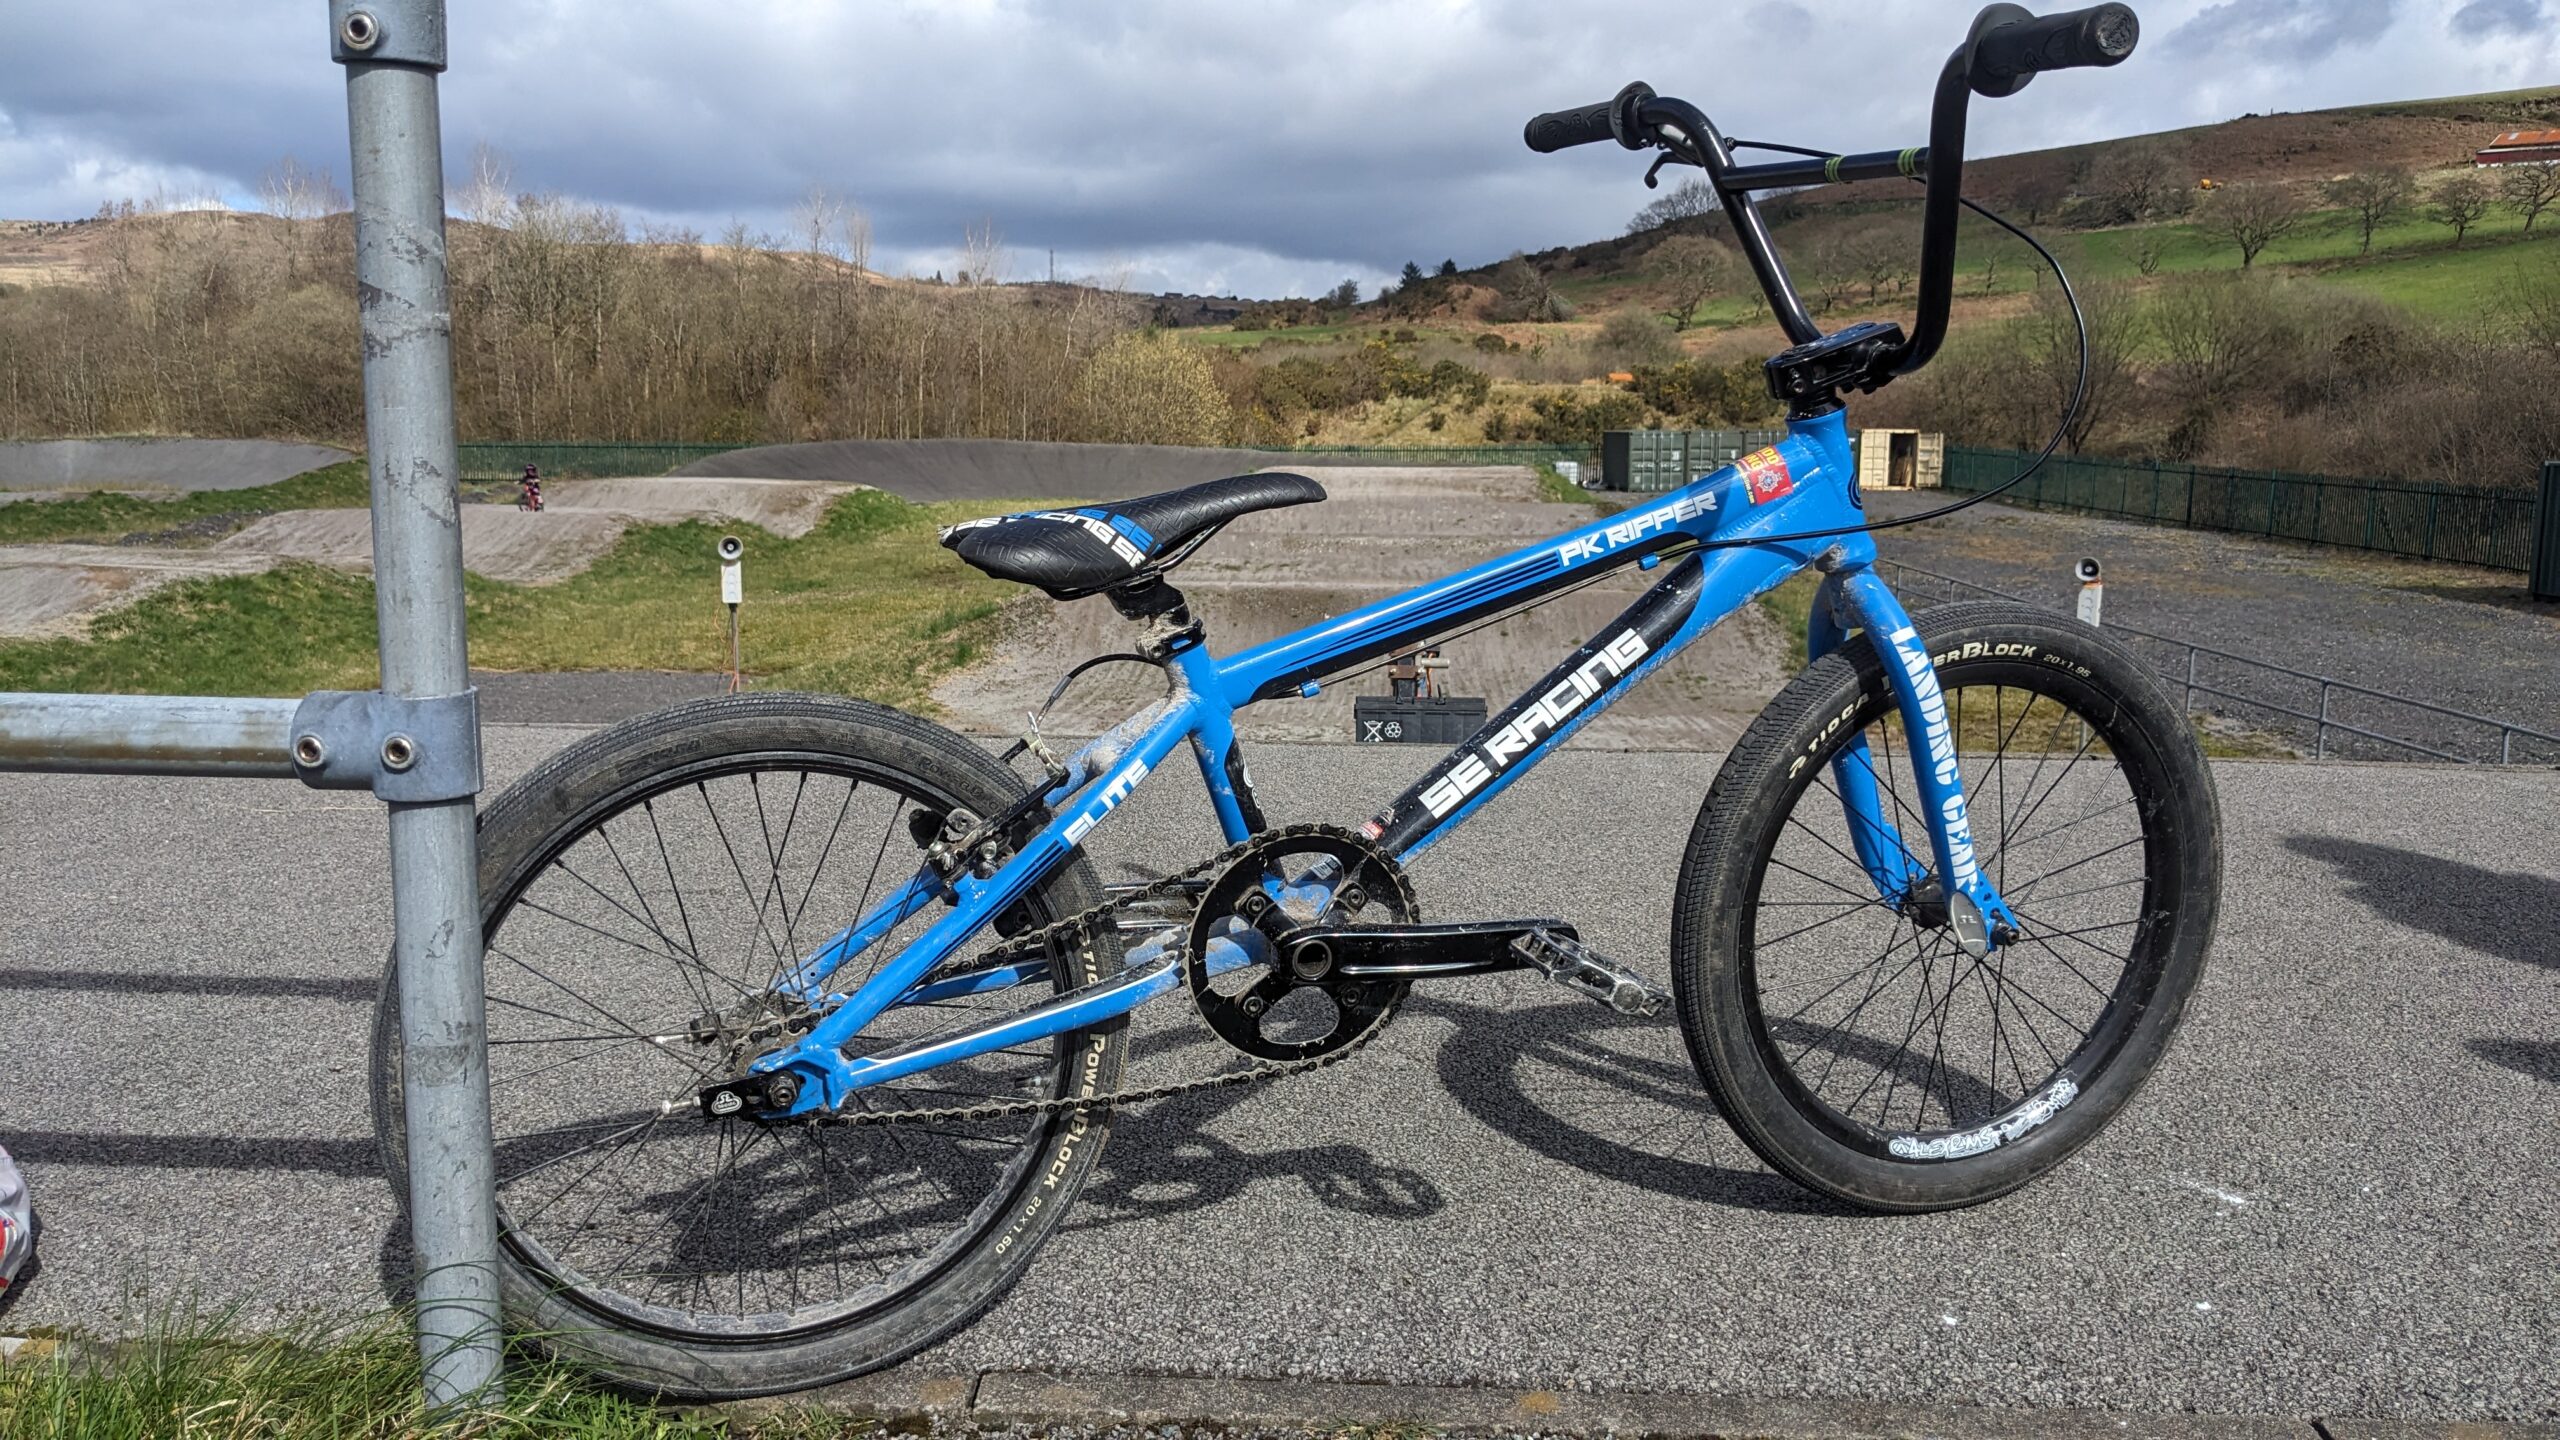 A blue BMX bike